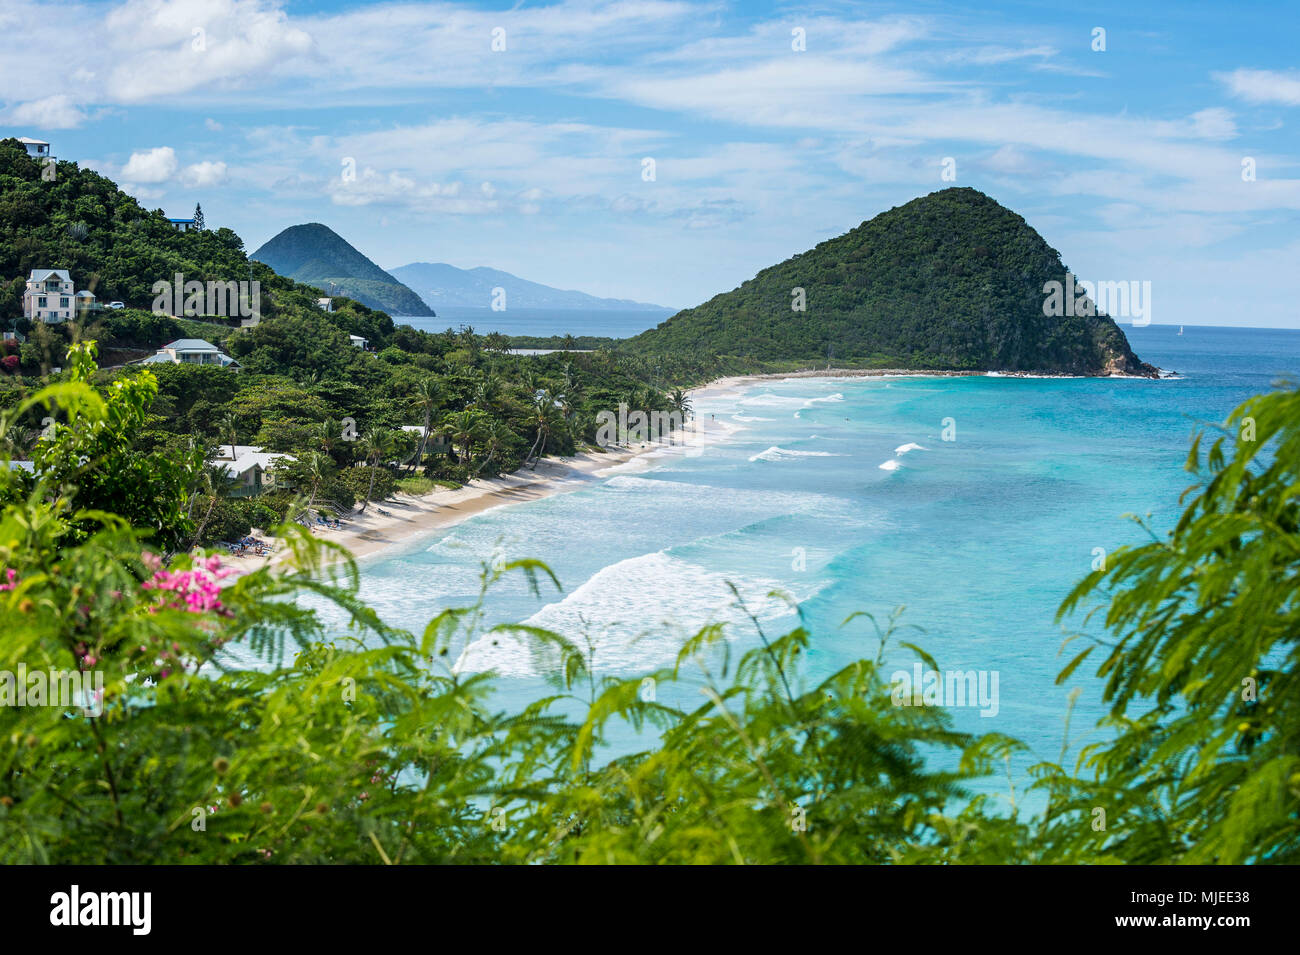 Overlook over Long Beach, Tortola, British Virgin Islands Stock Photo